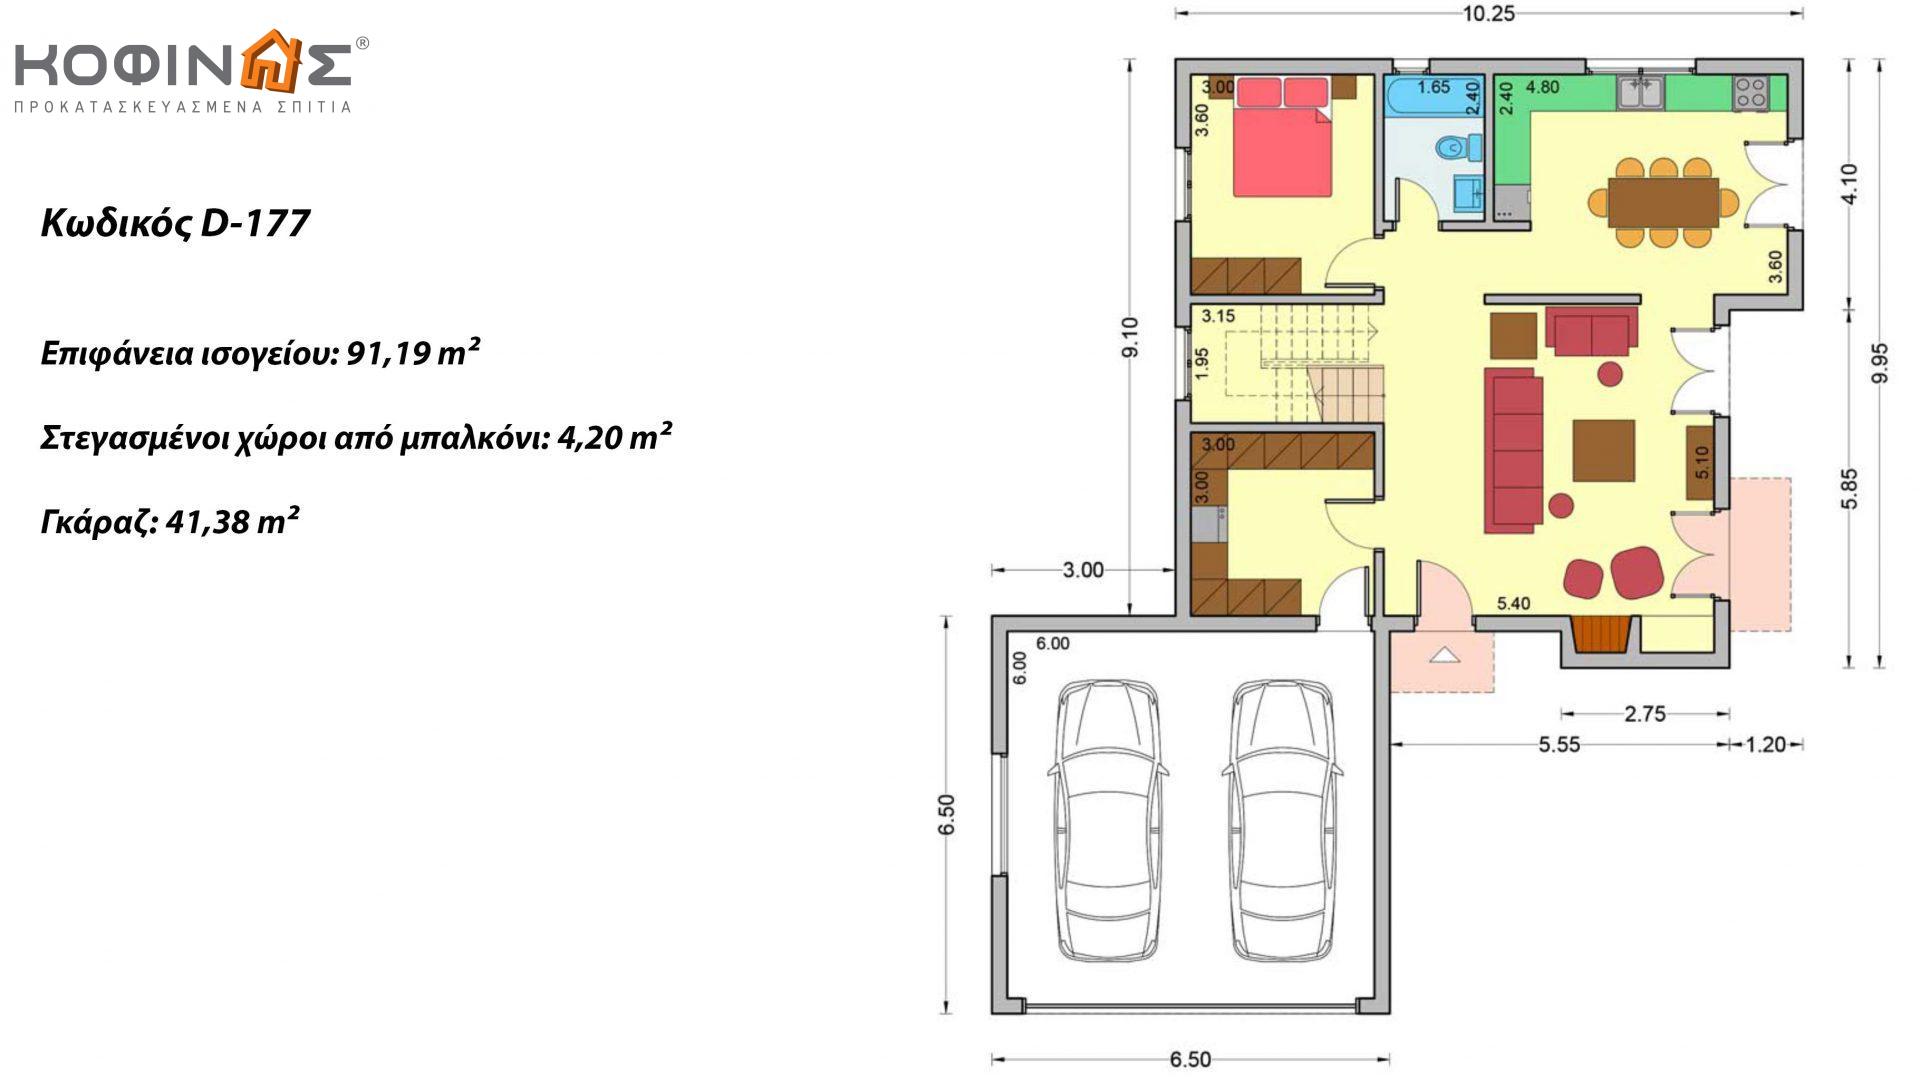 Διώροφη Κατοικία D-177, συνολικής επιφάνειας 177,46 τ.μ., +Γκαράζ 41.38 m²(=218,84 m²),συνολική επιφάνεια στεγασμένων χώρων 4.20 τ.μ., μπαλκόνια 17.04 τ.μ.